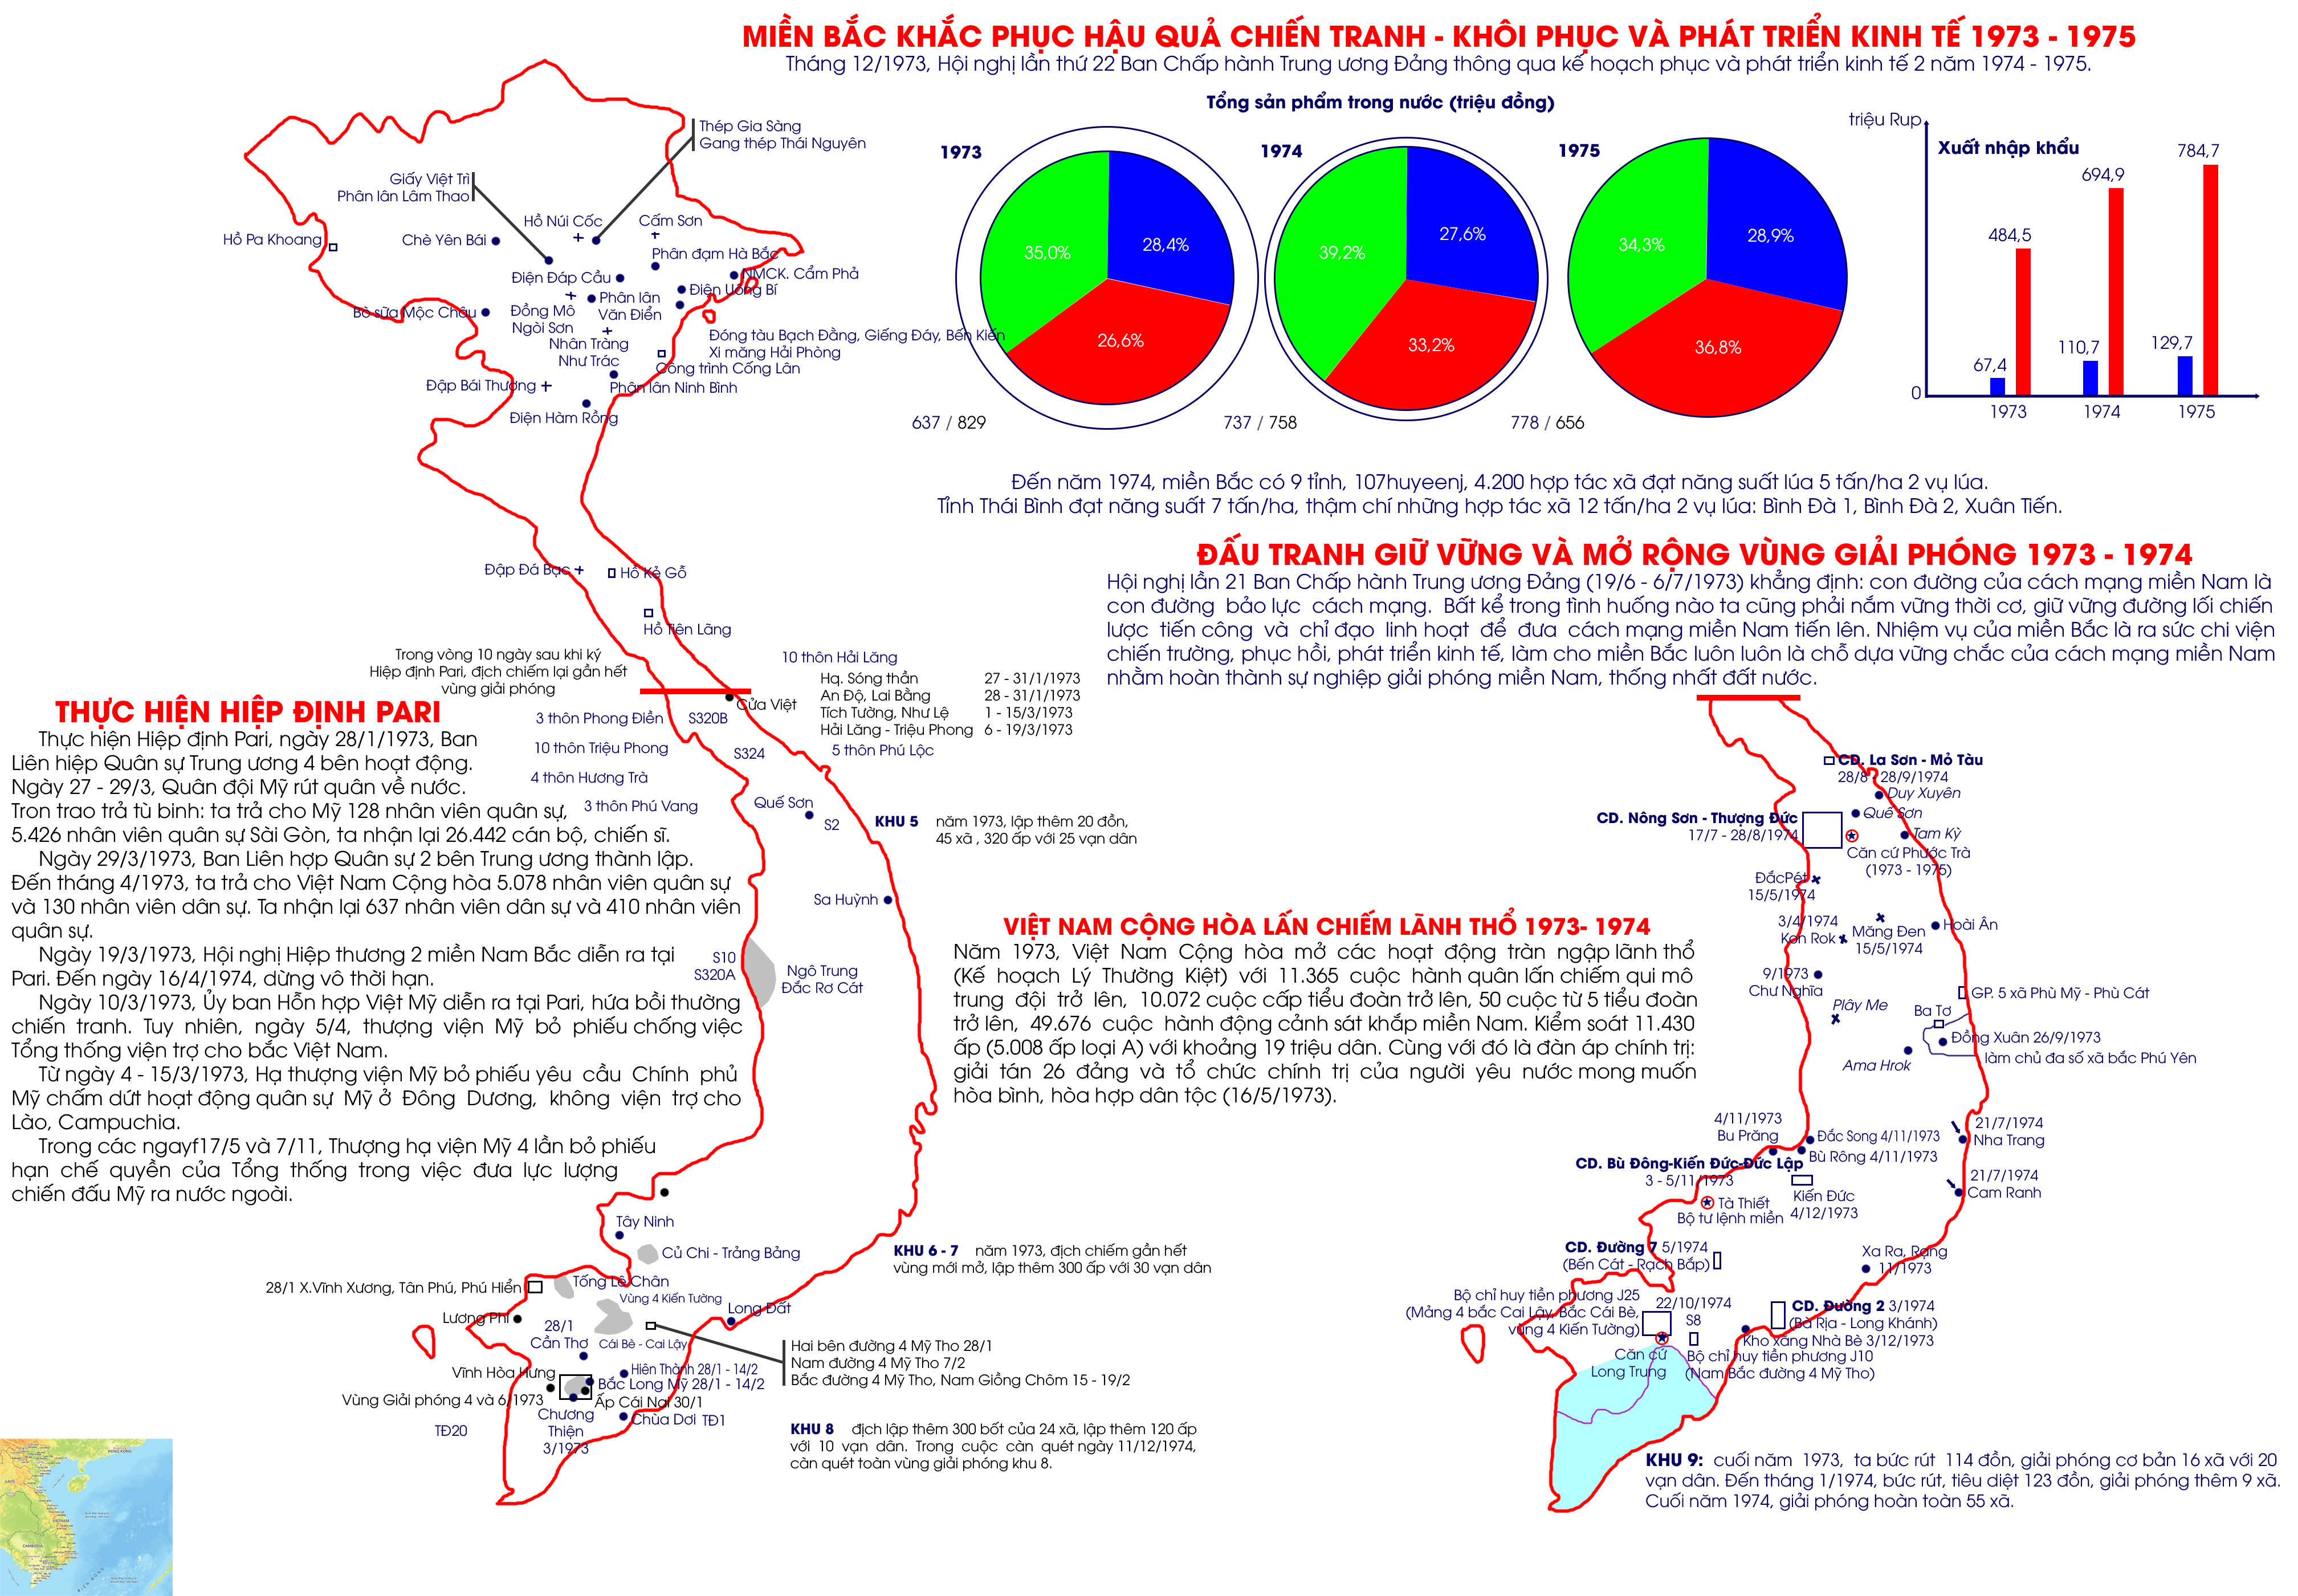 Miền Bắc khôi phục và phát triển kinh tế 1973-1975 và Quá trình lấn chiếm lãnh thổ của Việt Nam Cộng hòa 1973